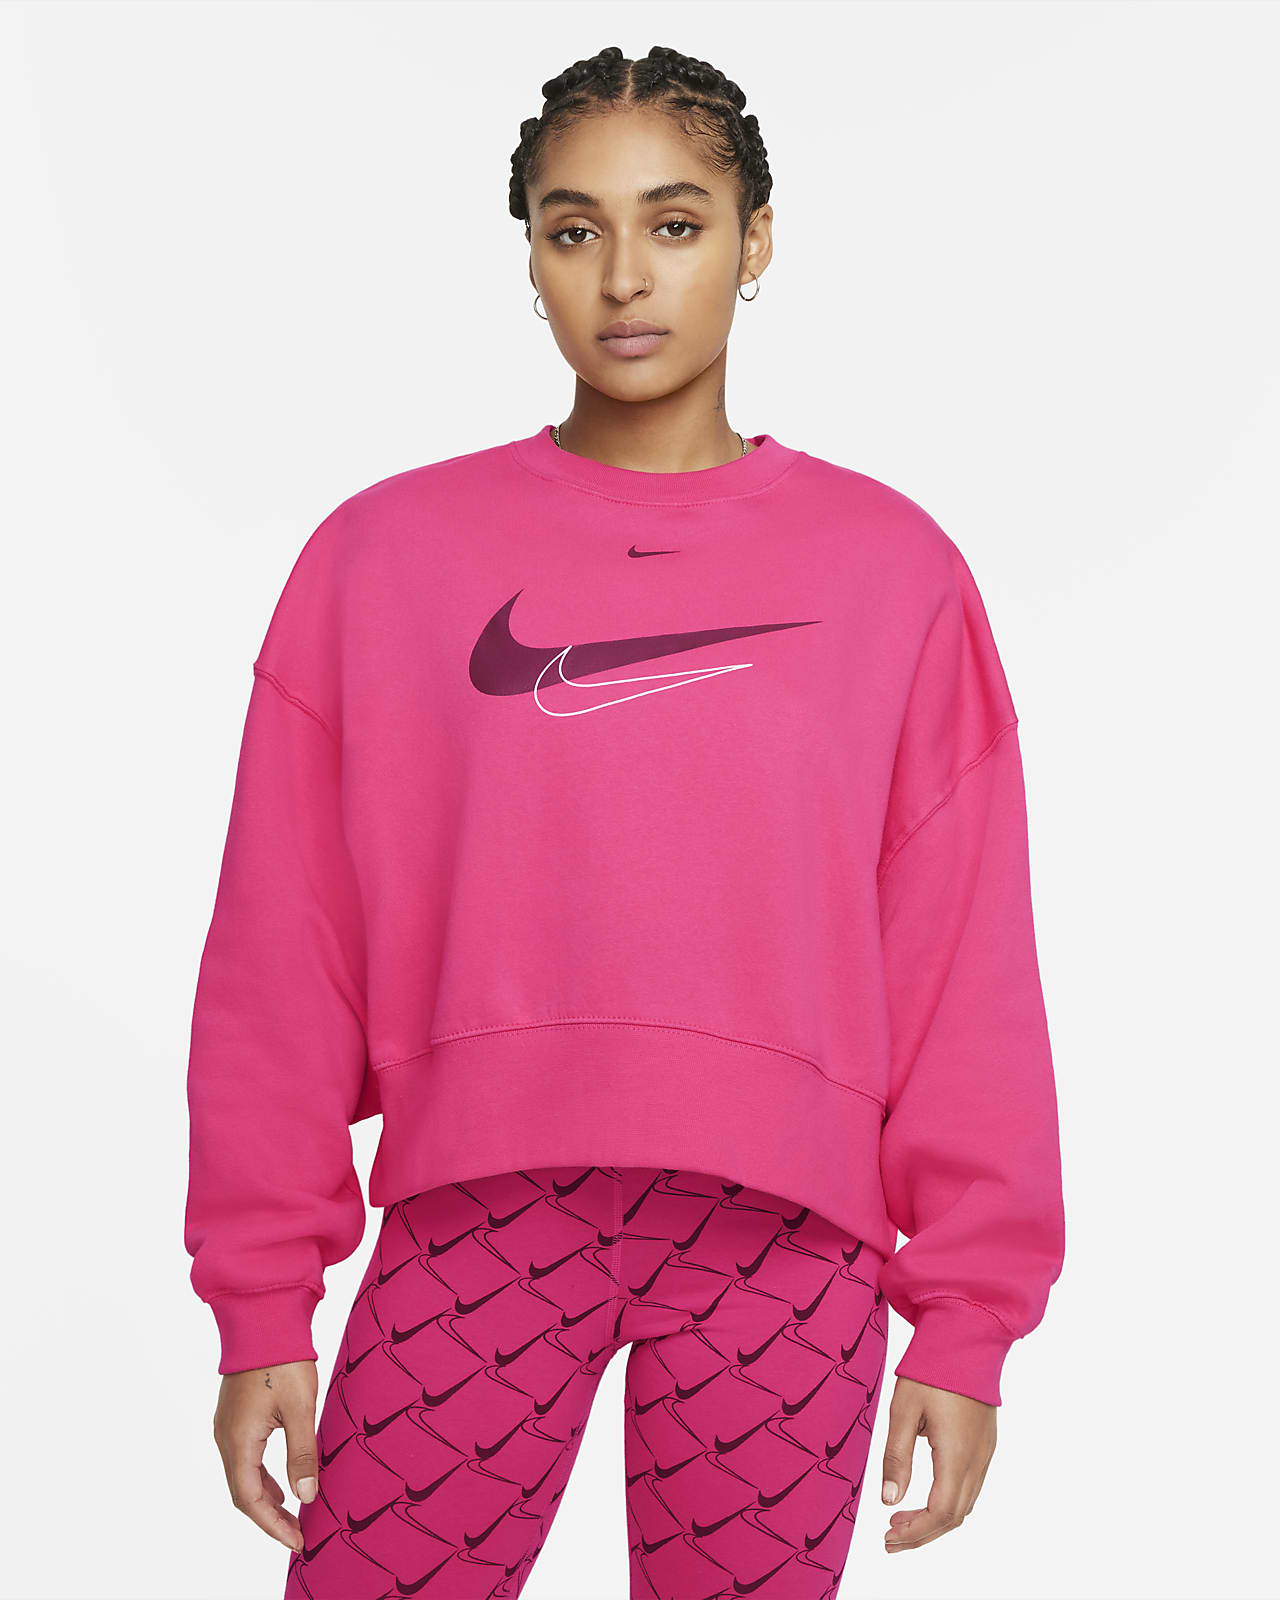 Nike Sportswear Women's Crop Fleece Sweatshirt